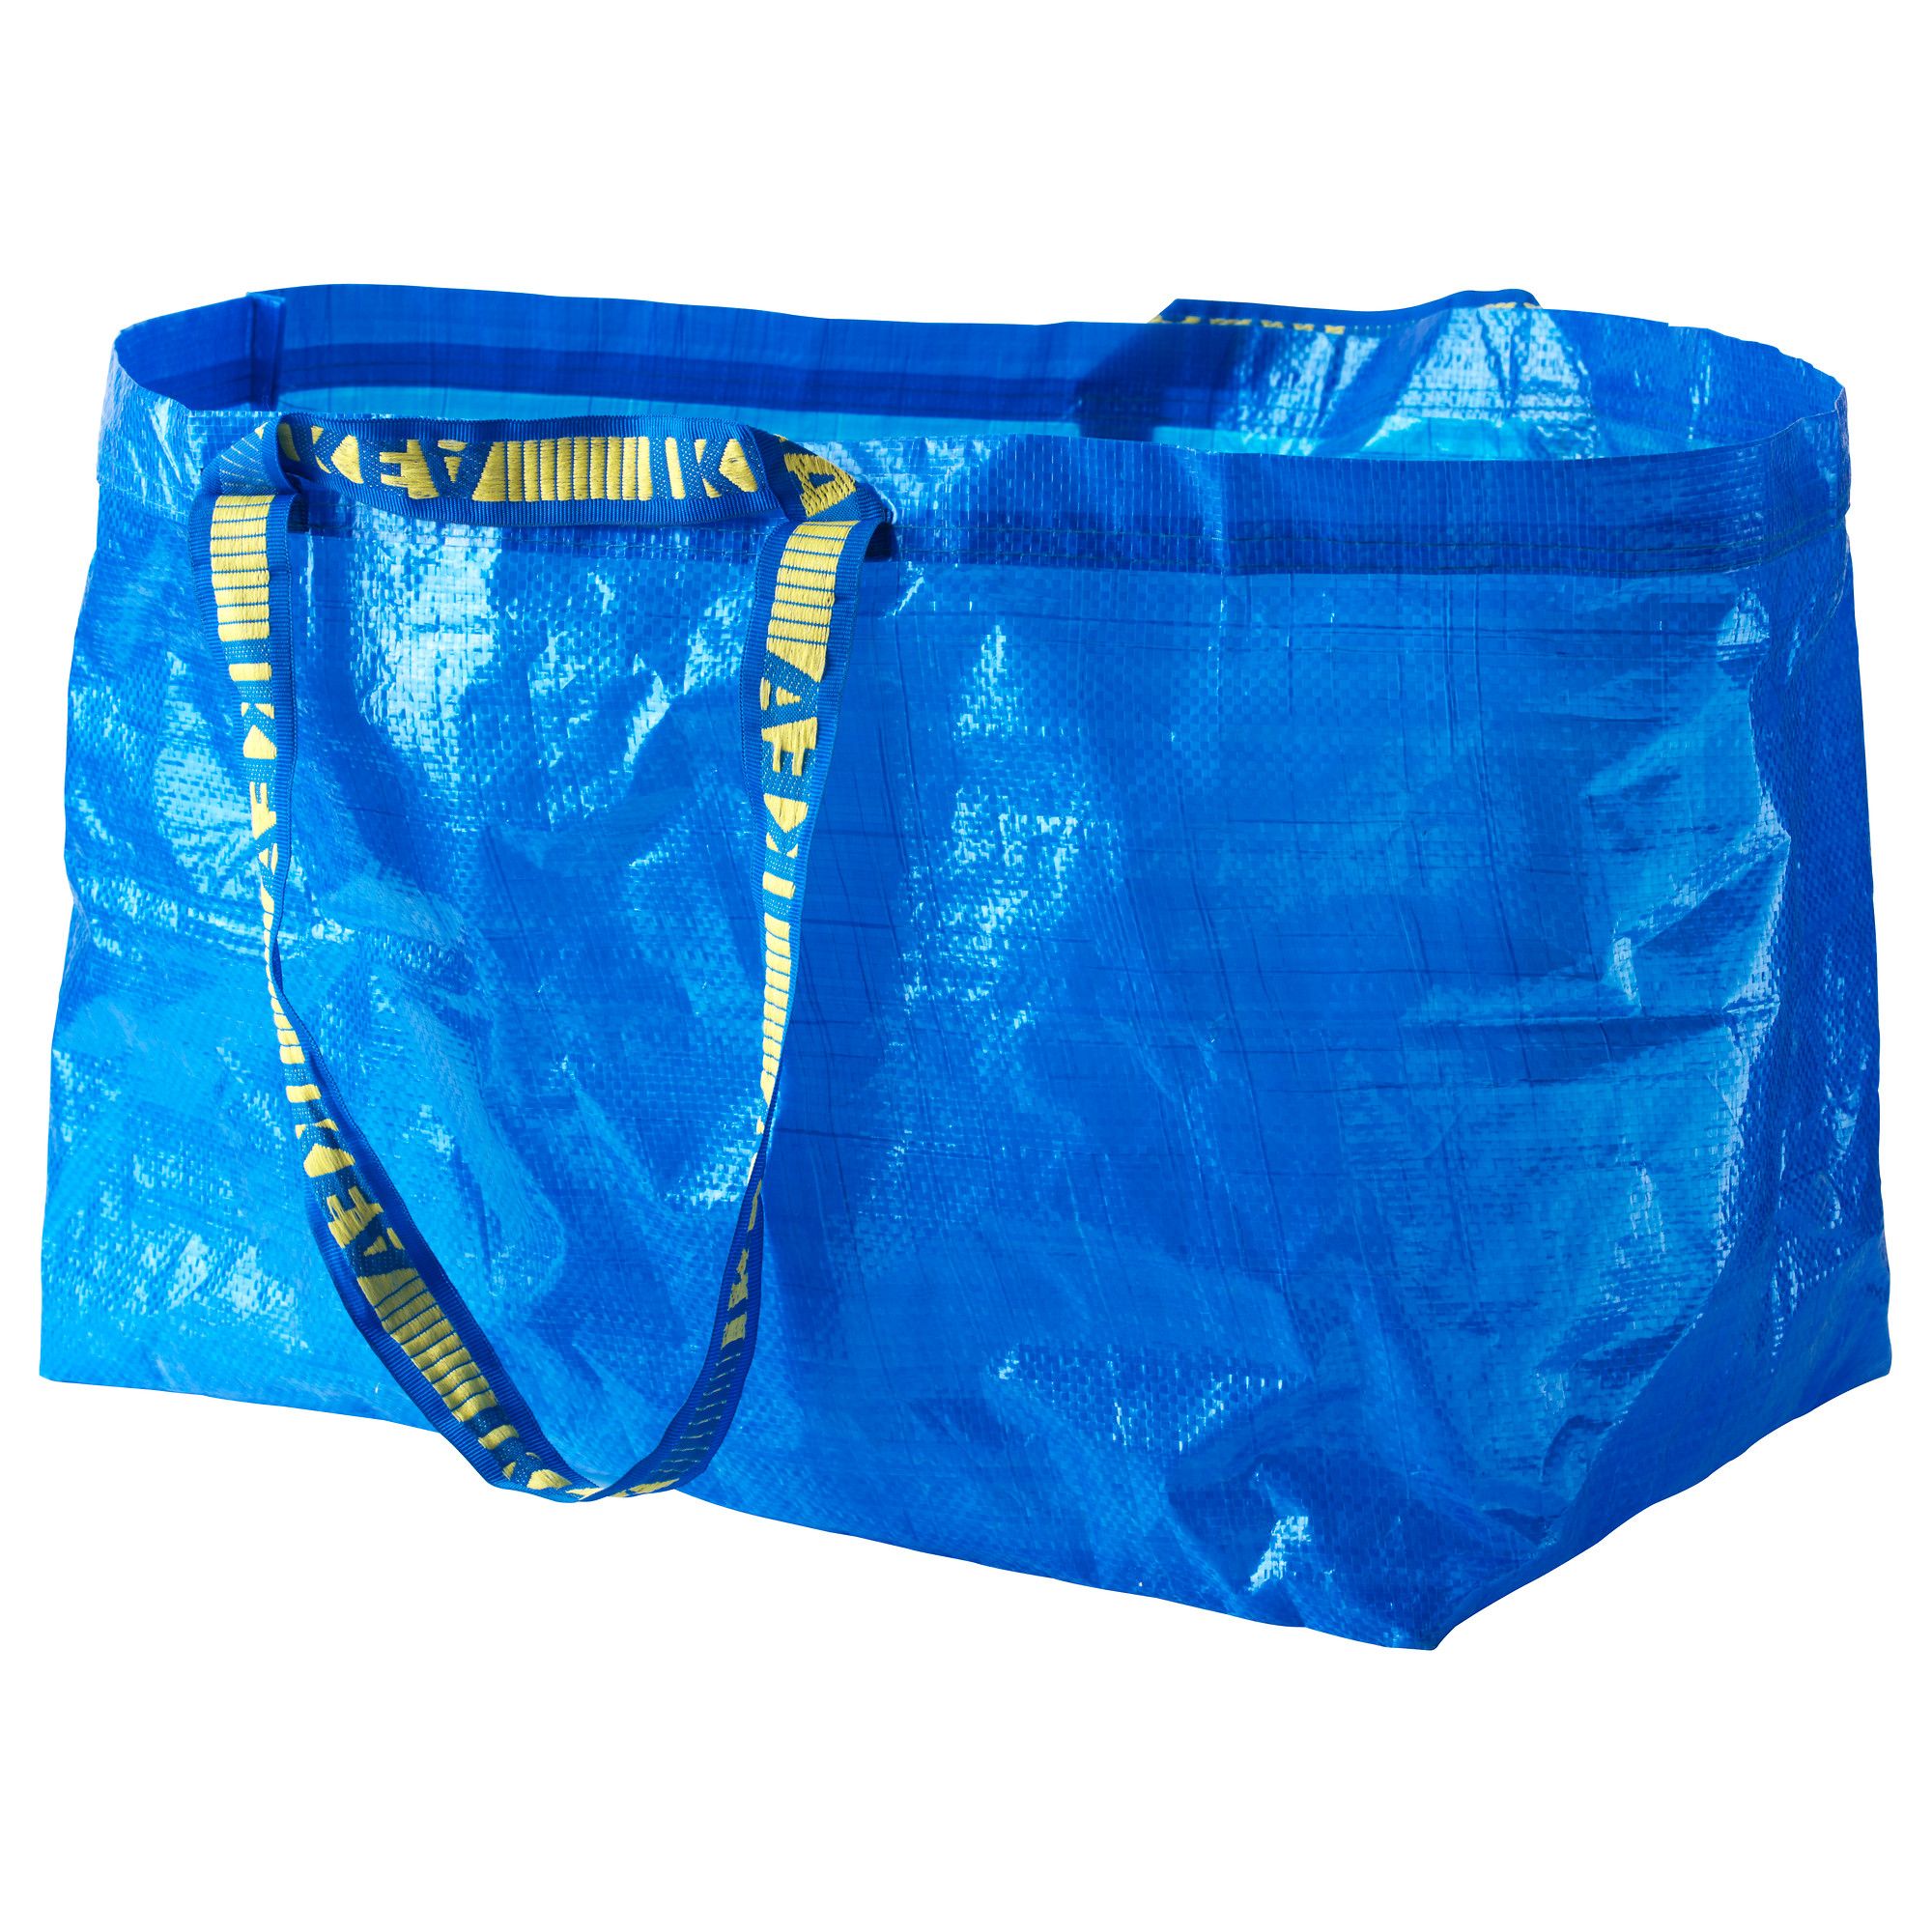 Ikea dice addio alla sua storica borsa blu